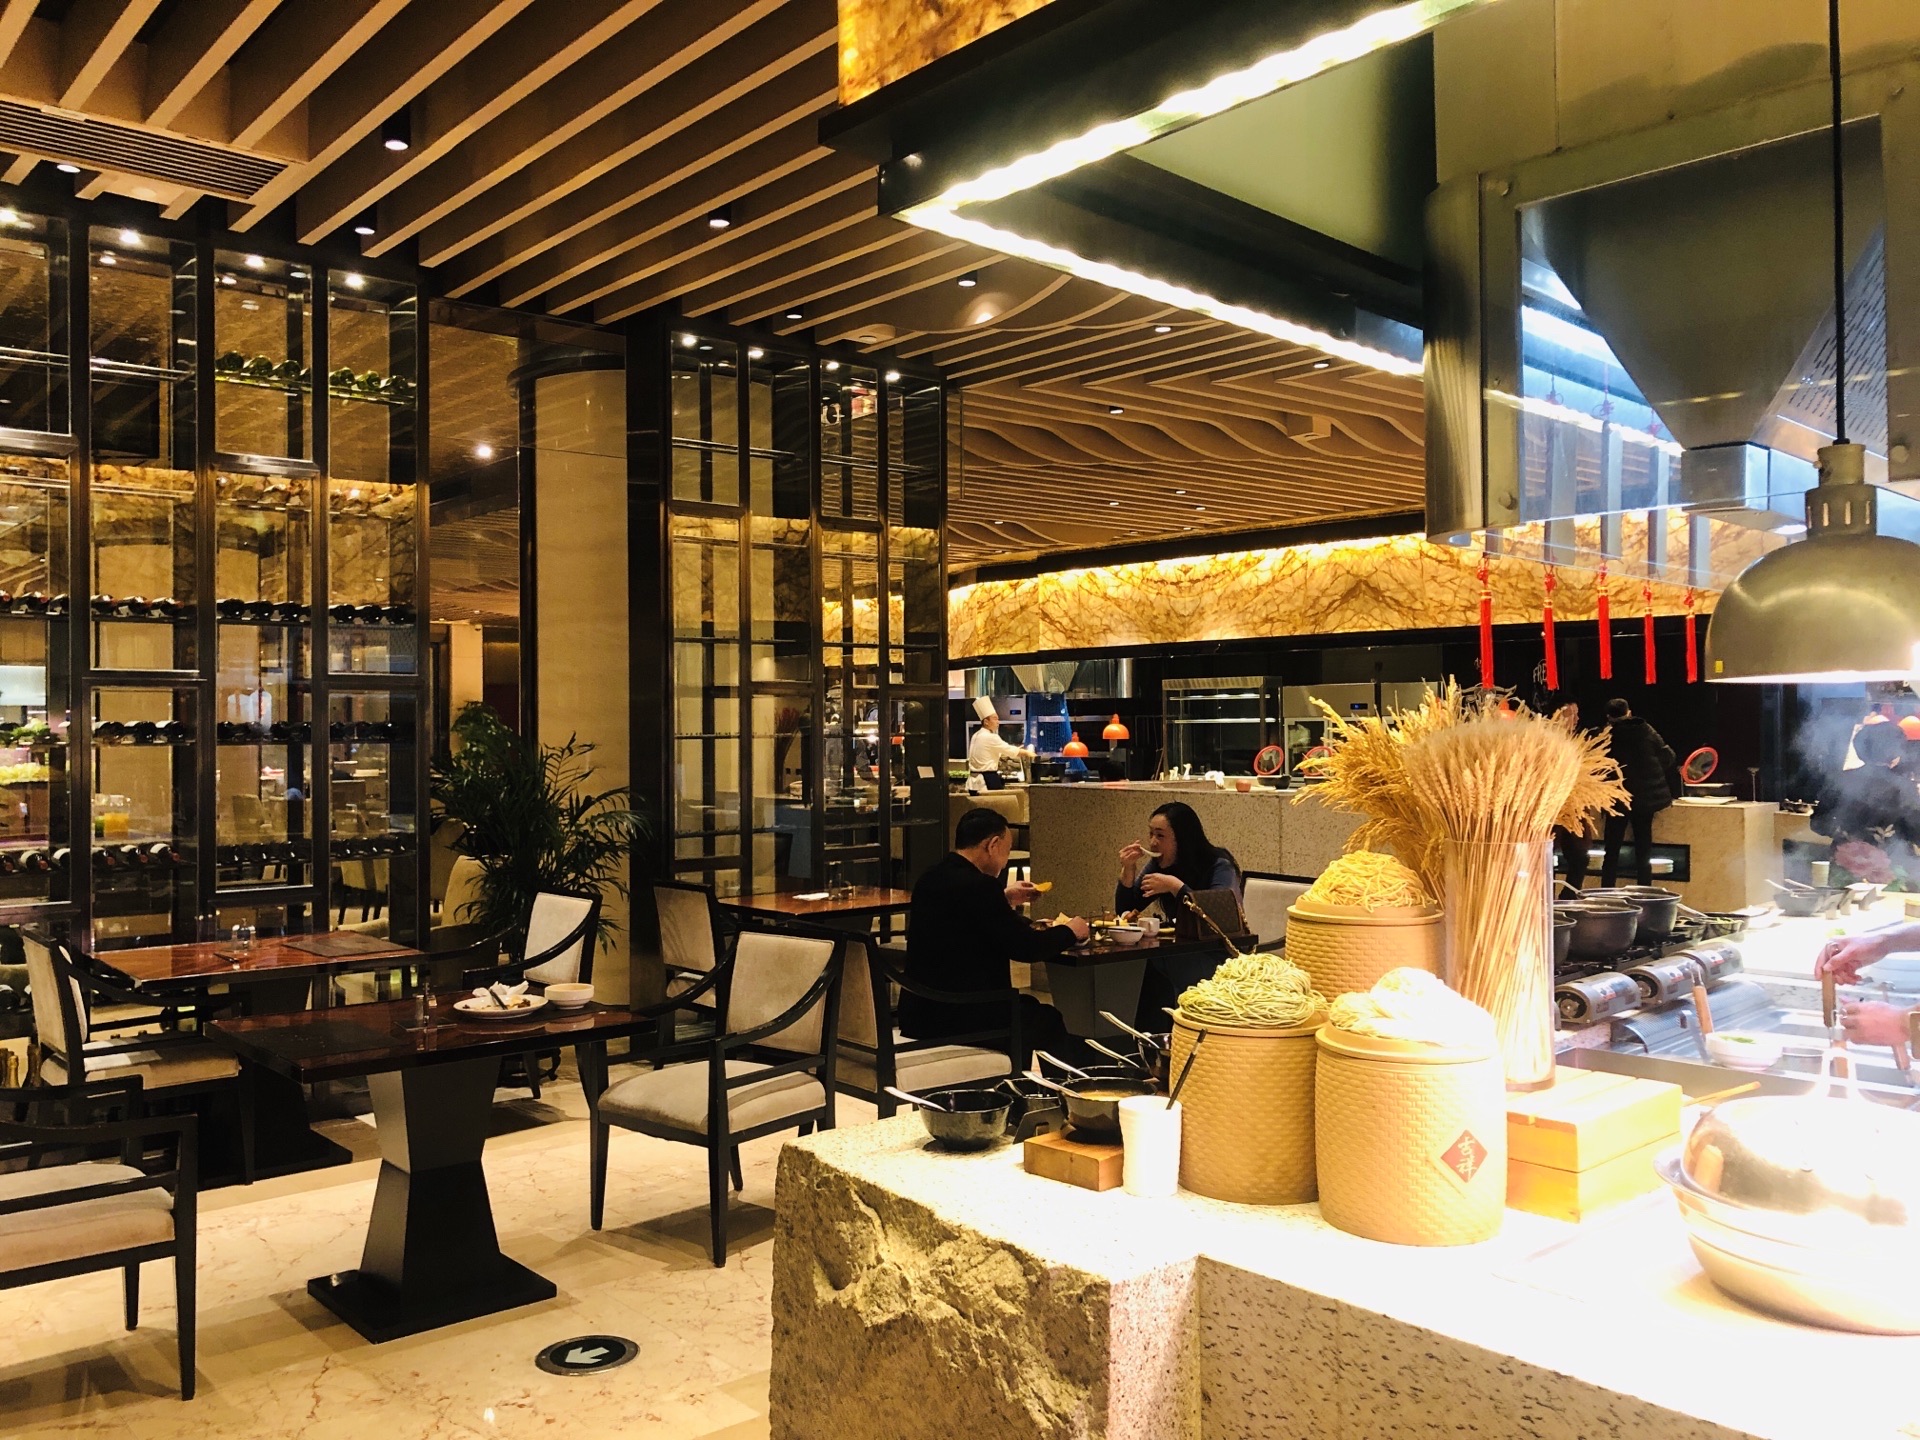 店面位于河北宾馆的一层,是一家典型的高档酒店自助餐厅,早中晚餐都